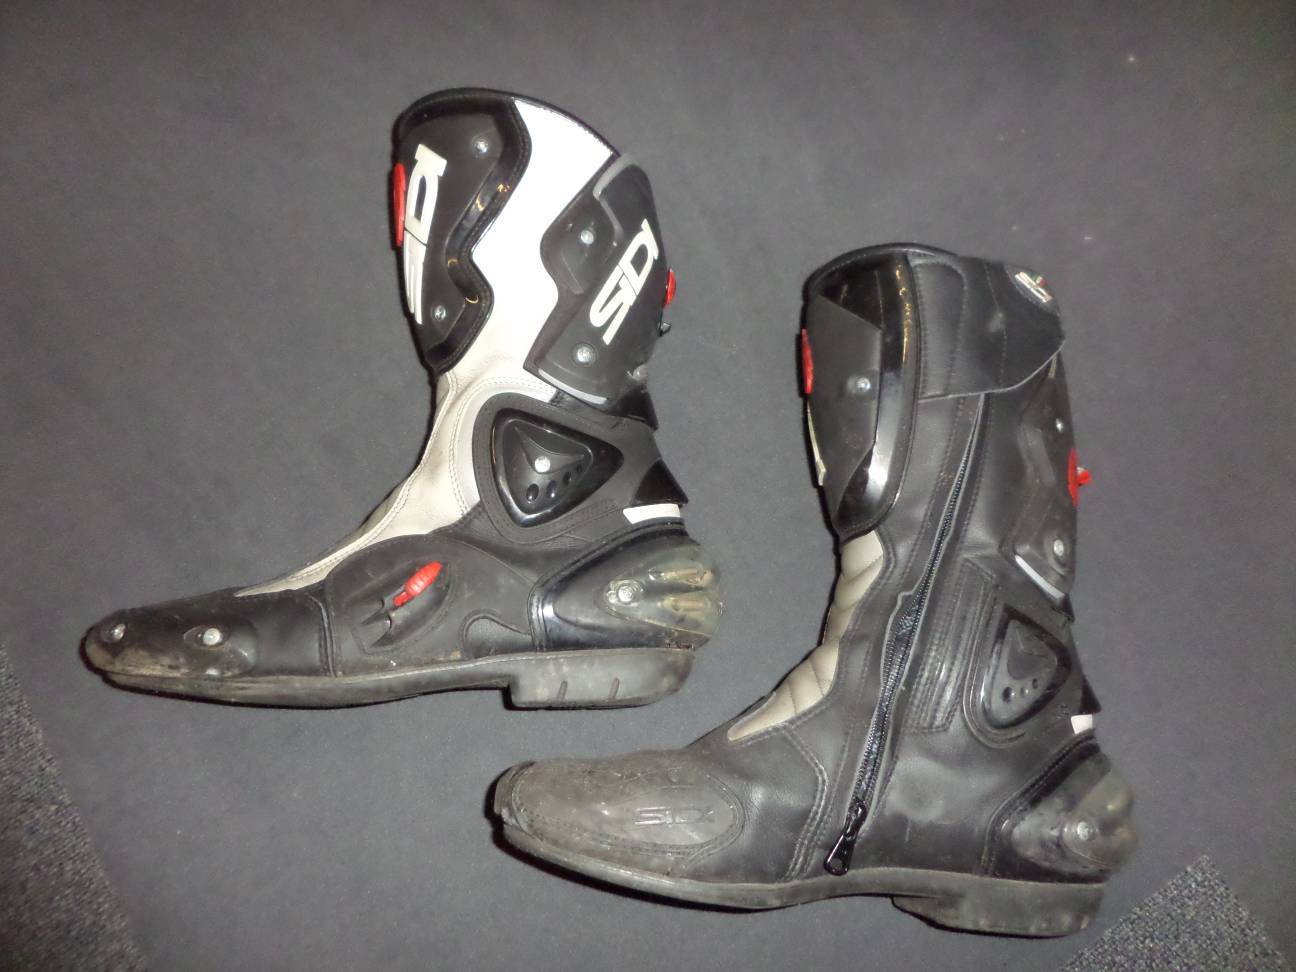 Used: Sidi Vertigo boots review